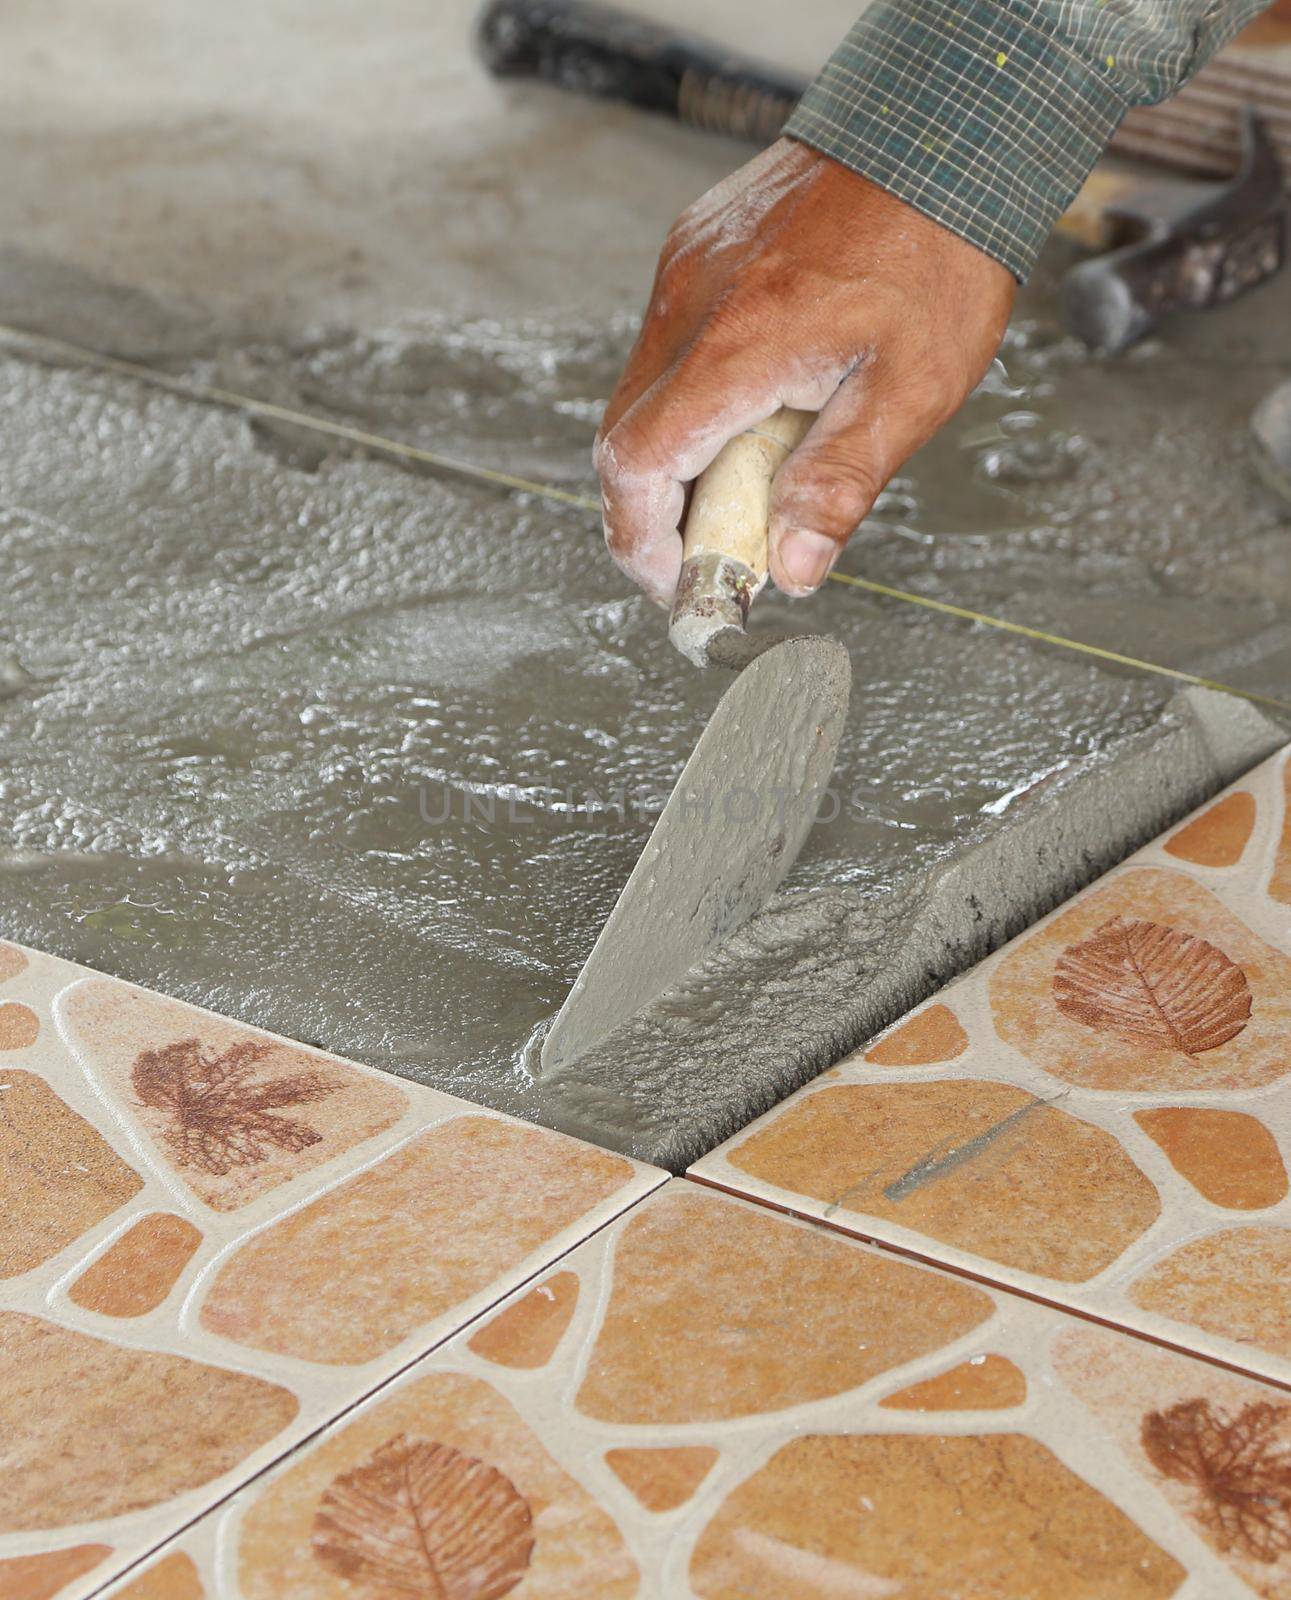 renovation - handyman laying tile, trowel with mortar